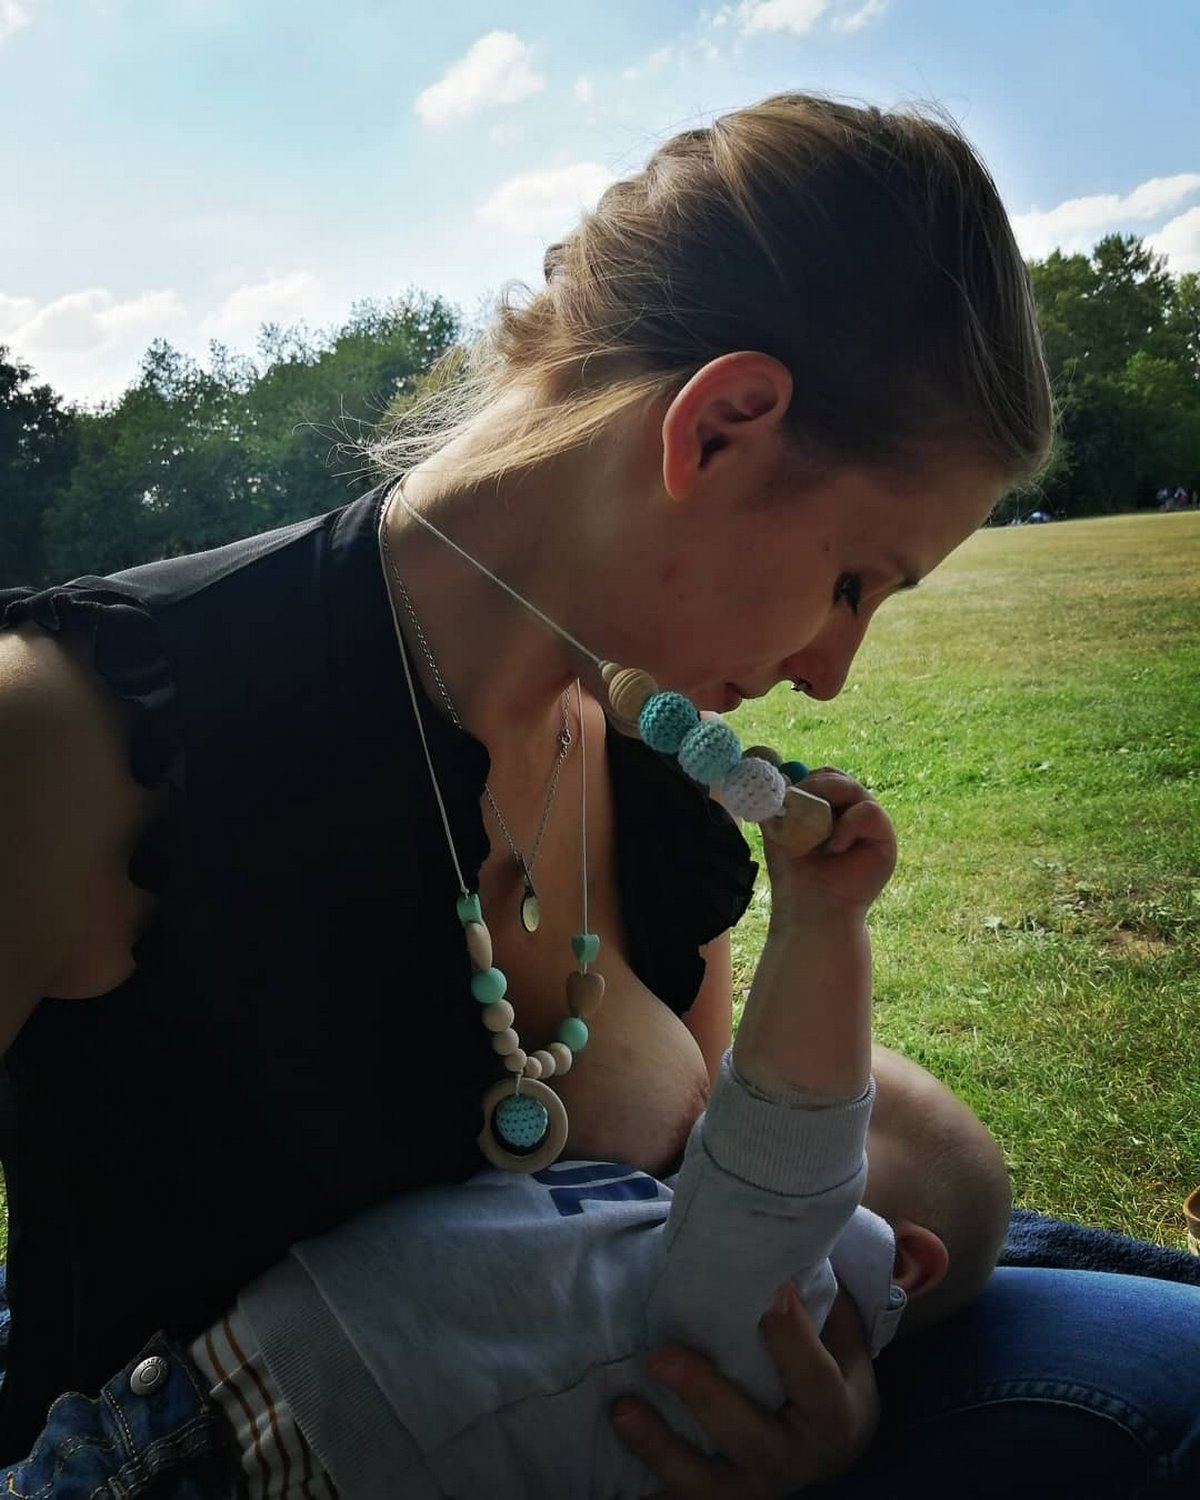 Des mamans publient des photos d’elles allaitant en public pour défendre leur liberté